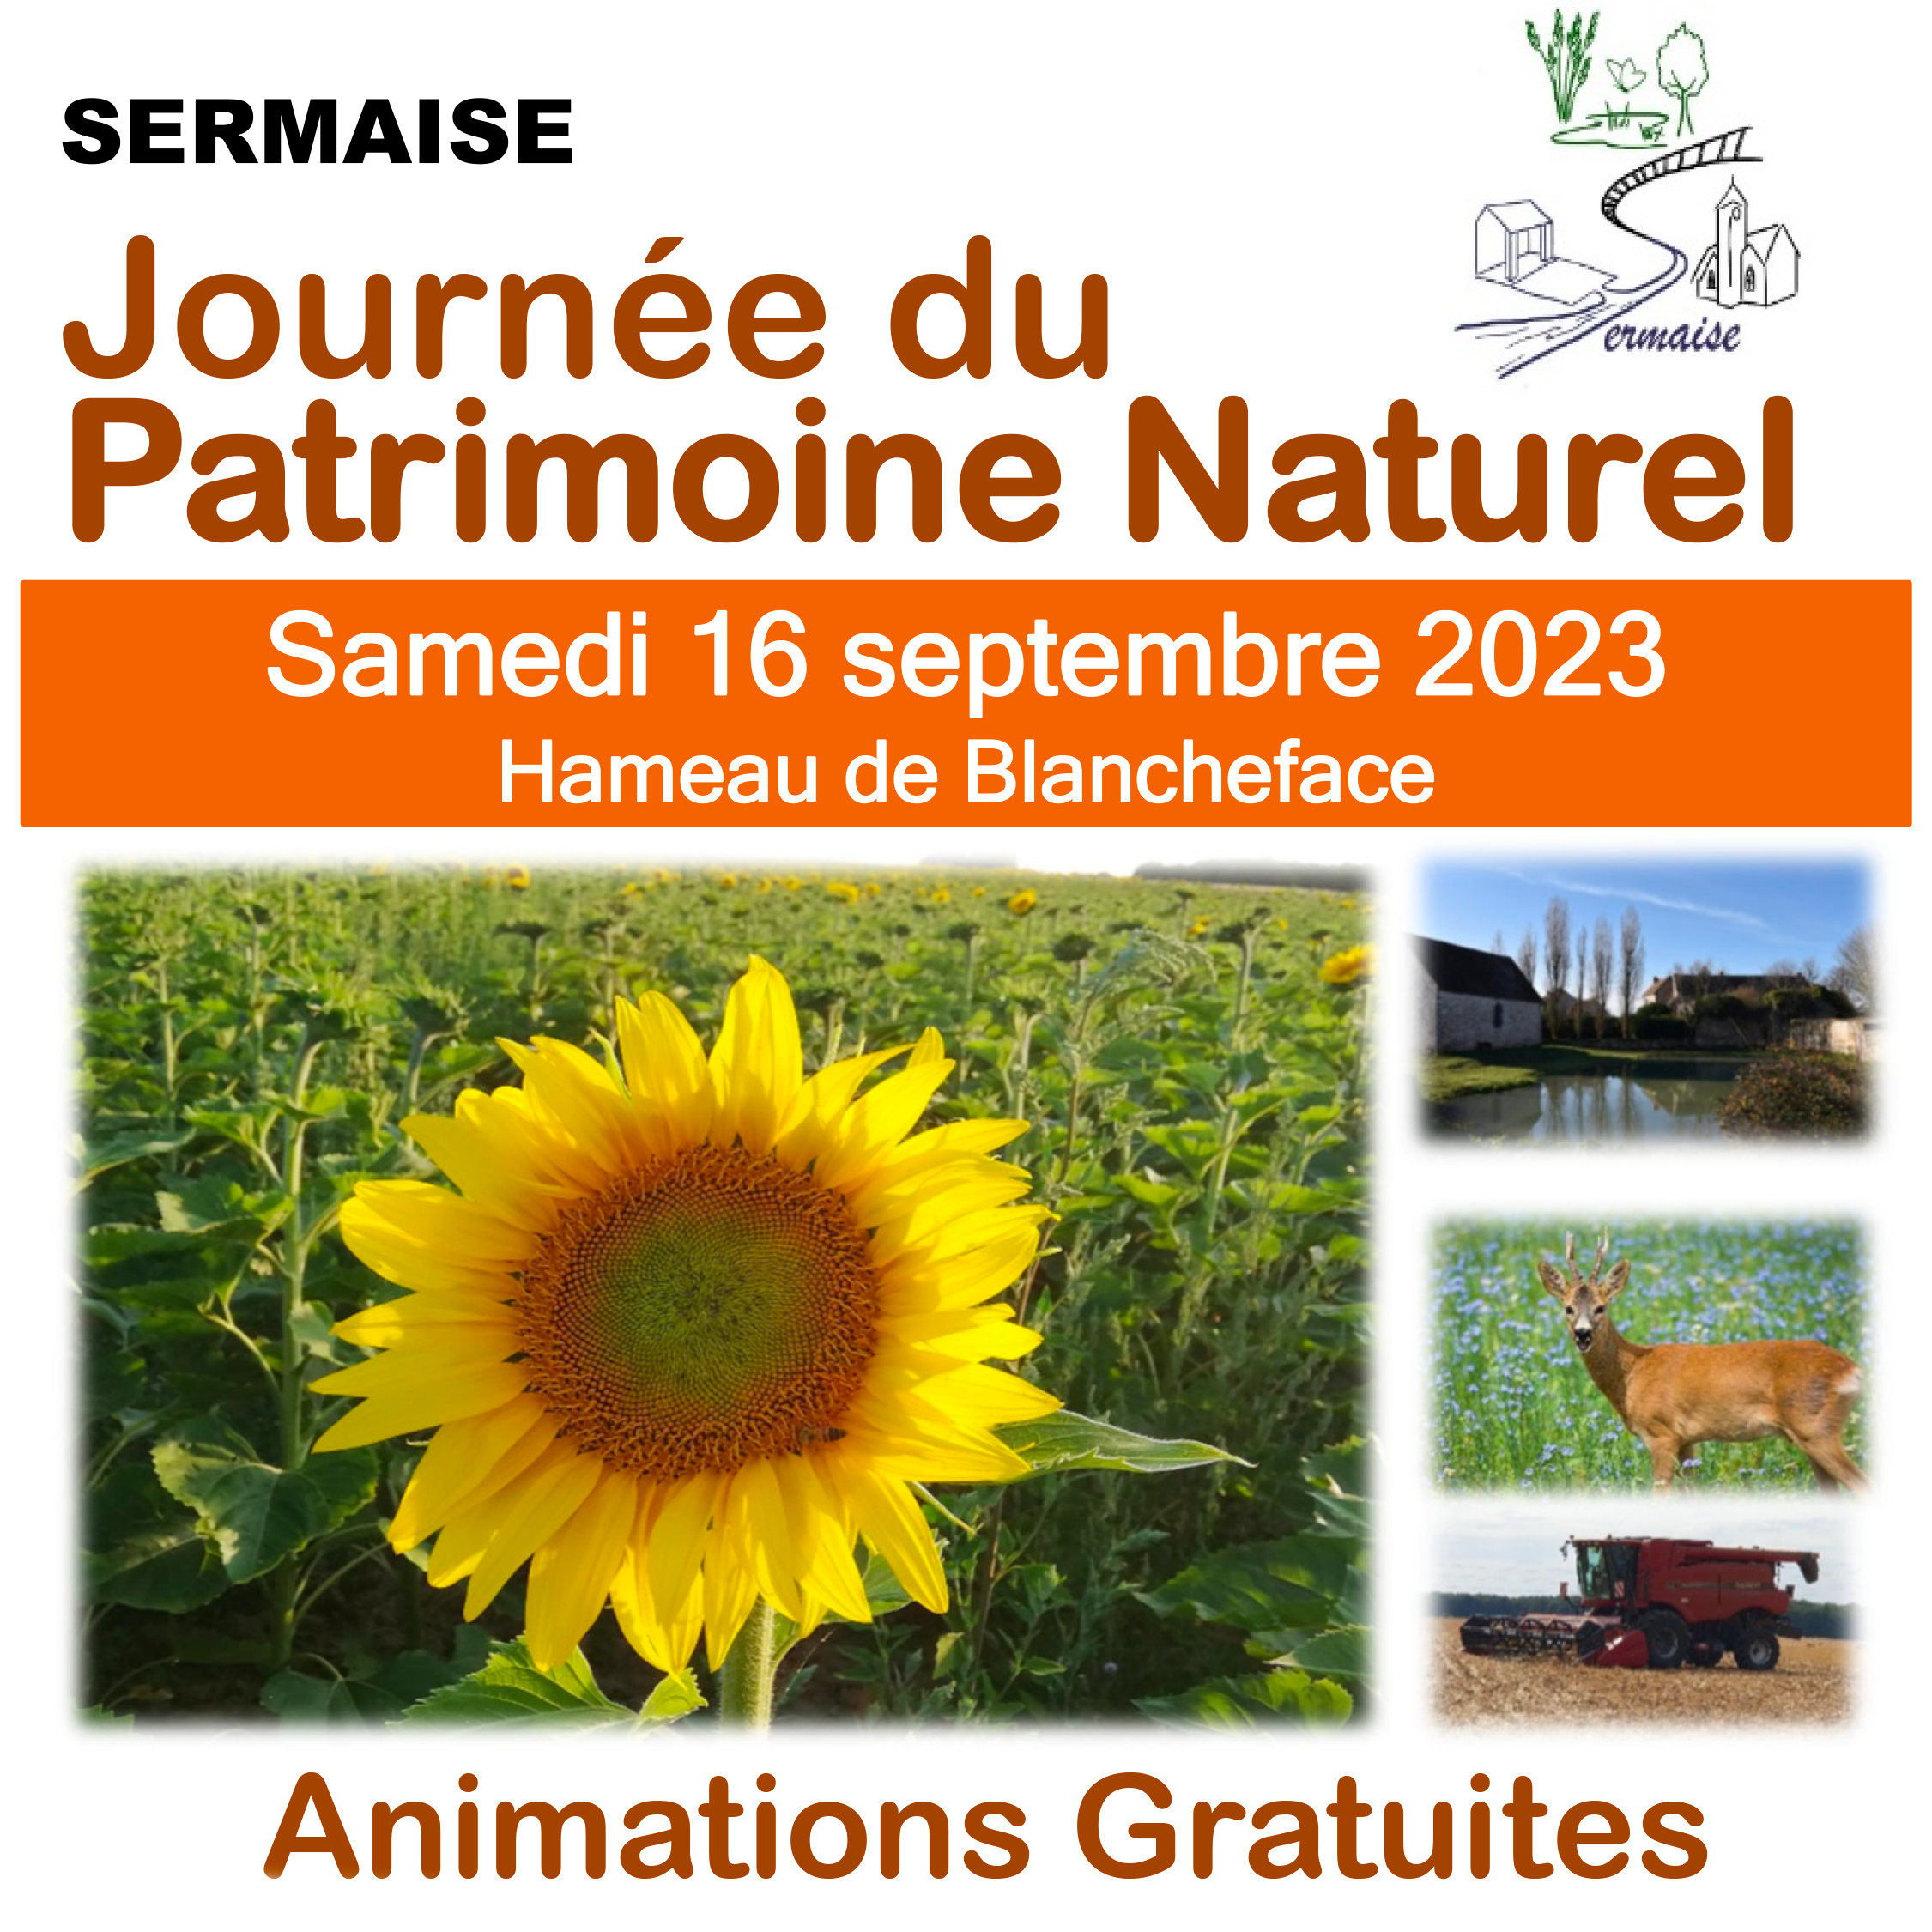 Journée du Patrimoine Naturel Sermaise, samedi 16 septembre